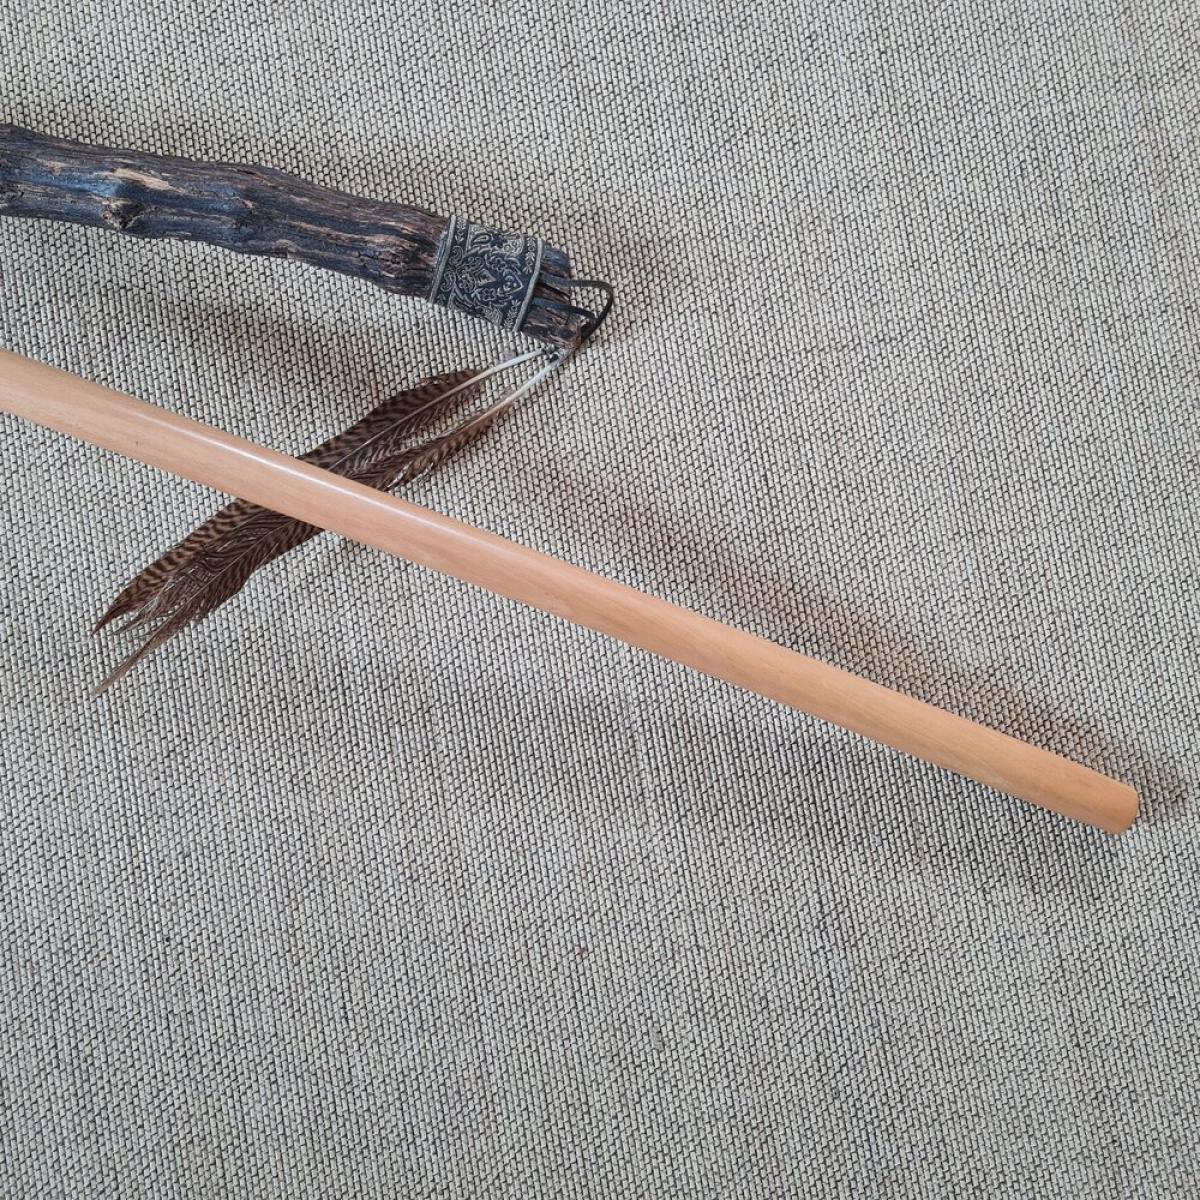 Jo-Stick made of Betis wood - length 135 cm ➤ www.bokken-shop.de. Suitable for Aikido, Iaido, Jo-Jutsu, Jodo, Bujinkan. Your Budo dealer!